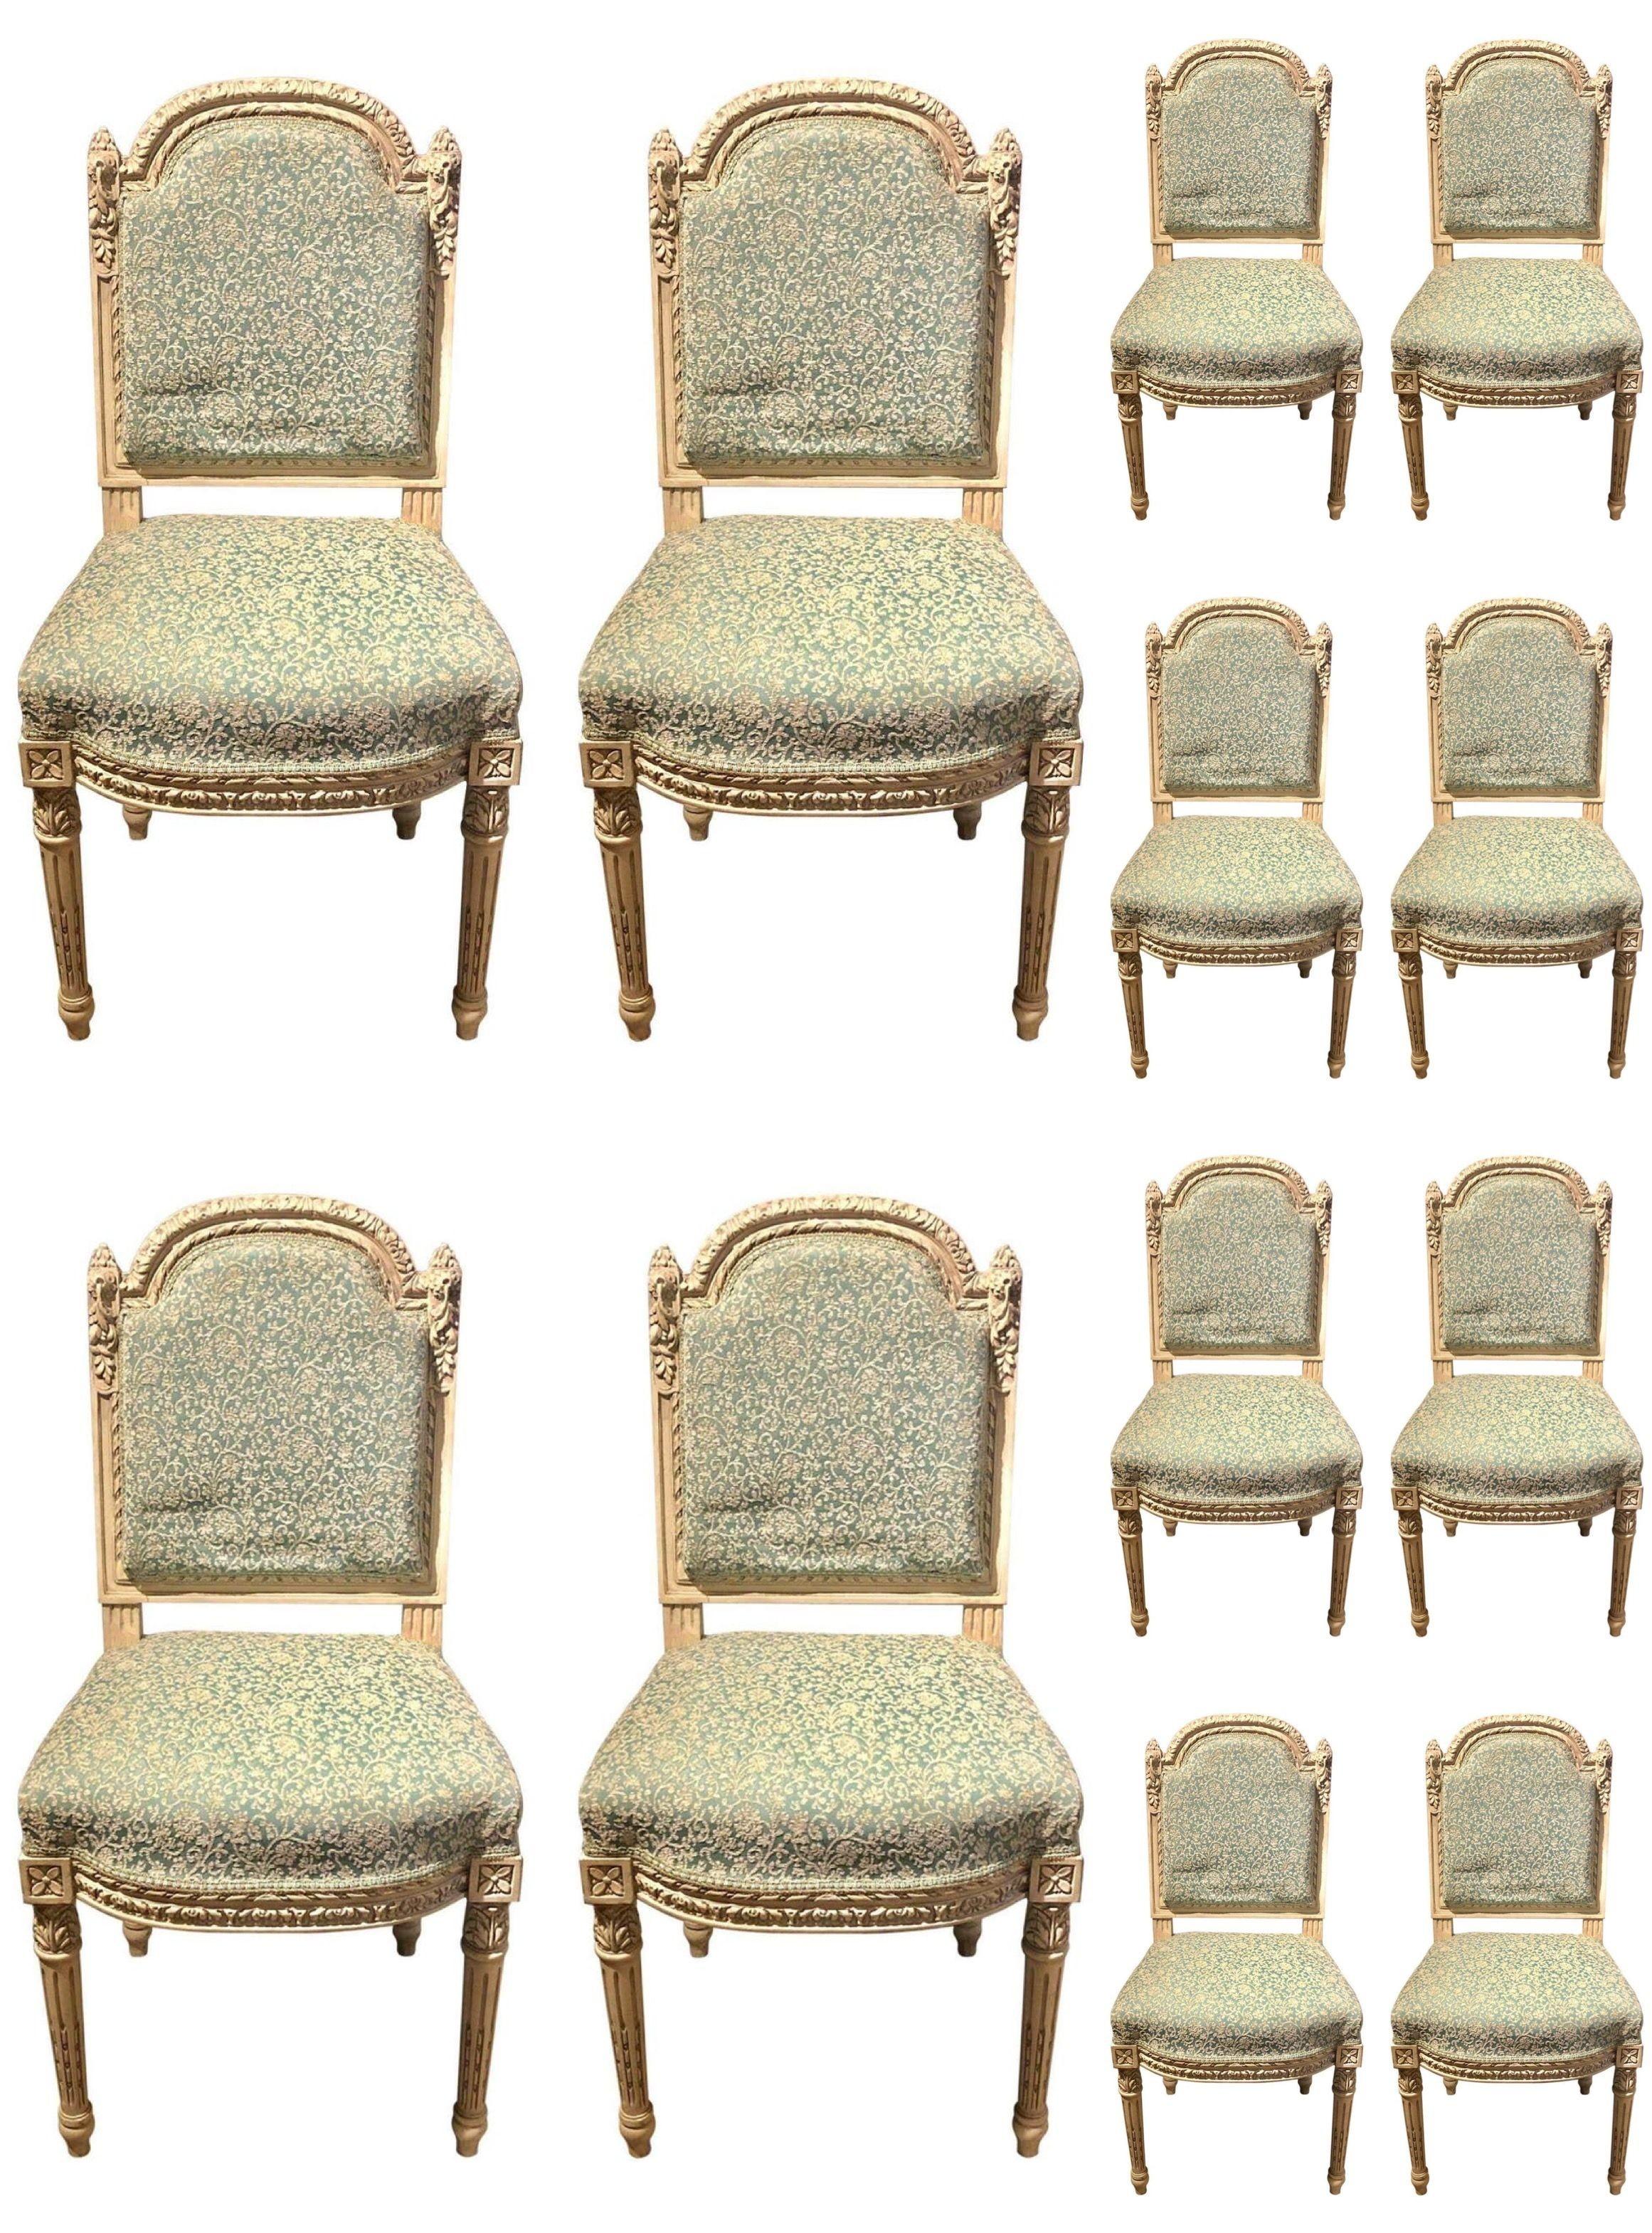 Satz von zehn lackierten Ess-/Beistellstühlen im Louis-XVI.-Stil, fein geschnitzt

 Von unserem ursprünglichen, atemberaubenden Satz von 24 Esszimmerstühlen, ist diese Auflistung für 10 Stück, die derzeit verfügbar bleiben und wurden vollständig